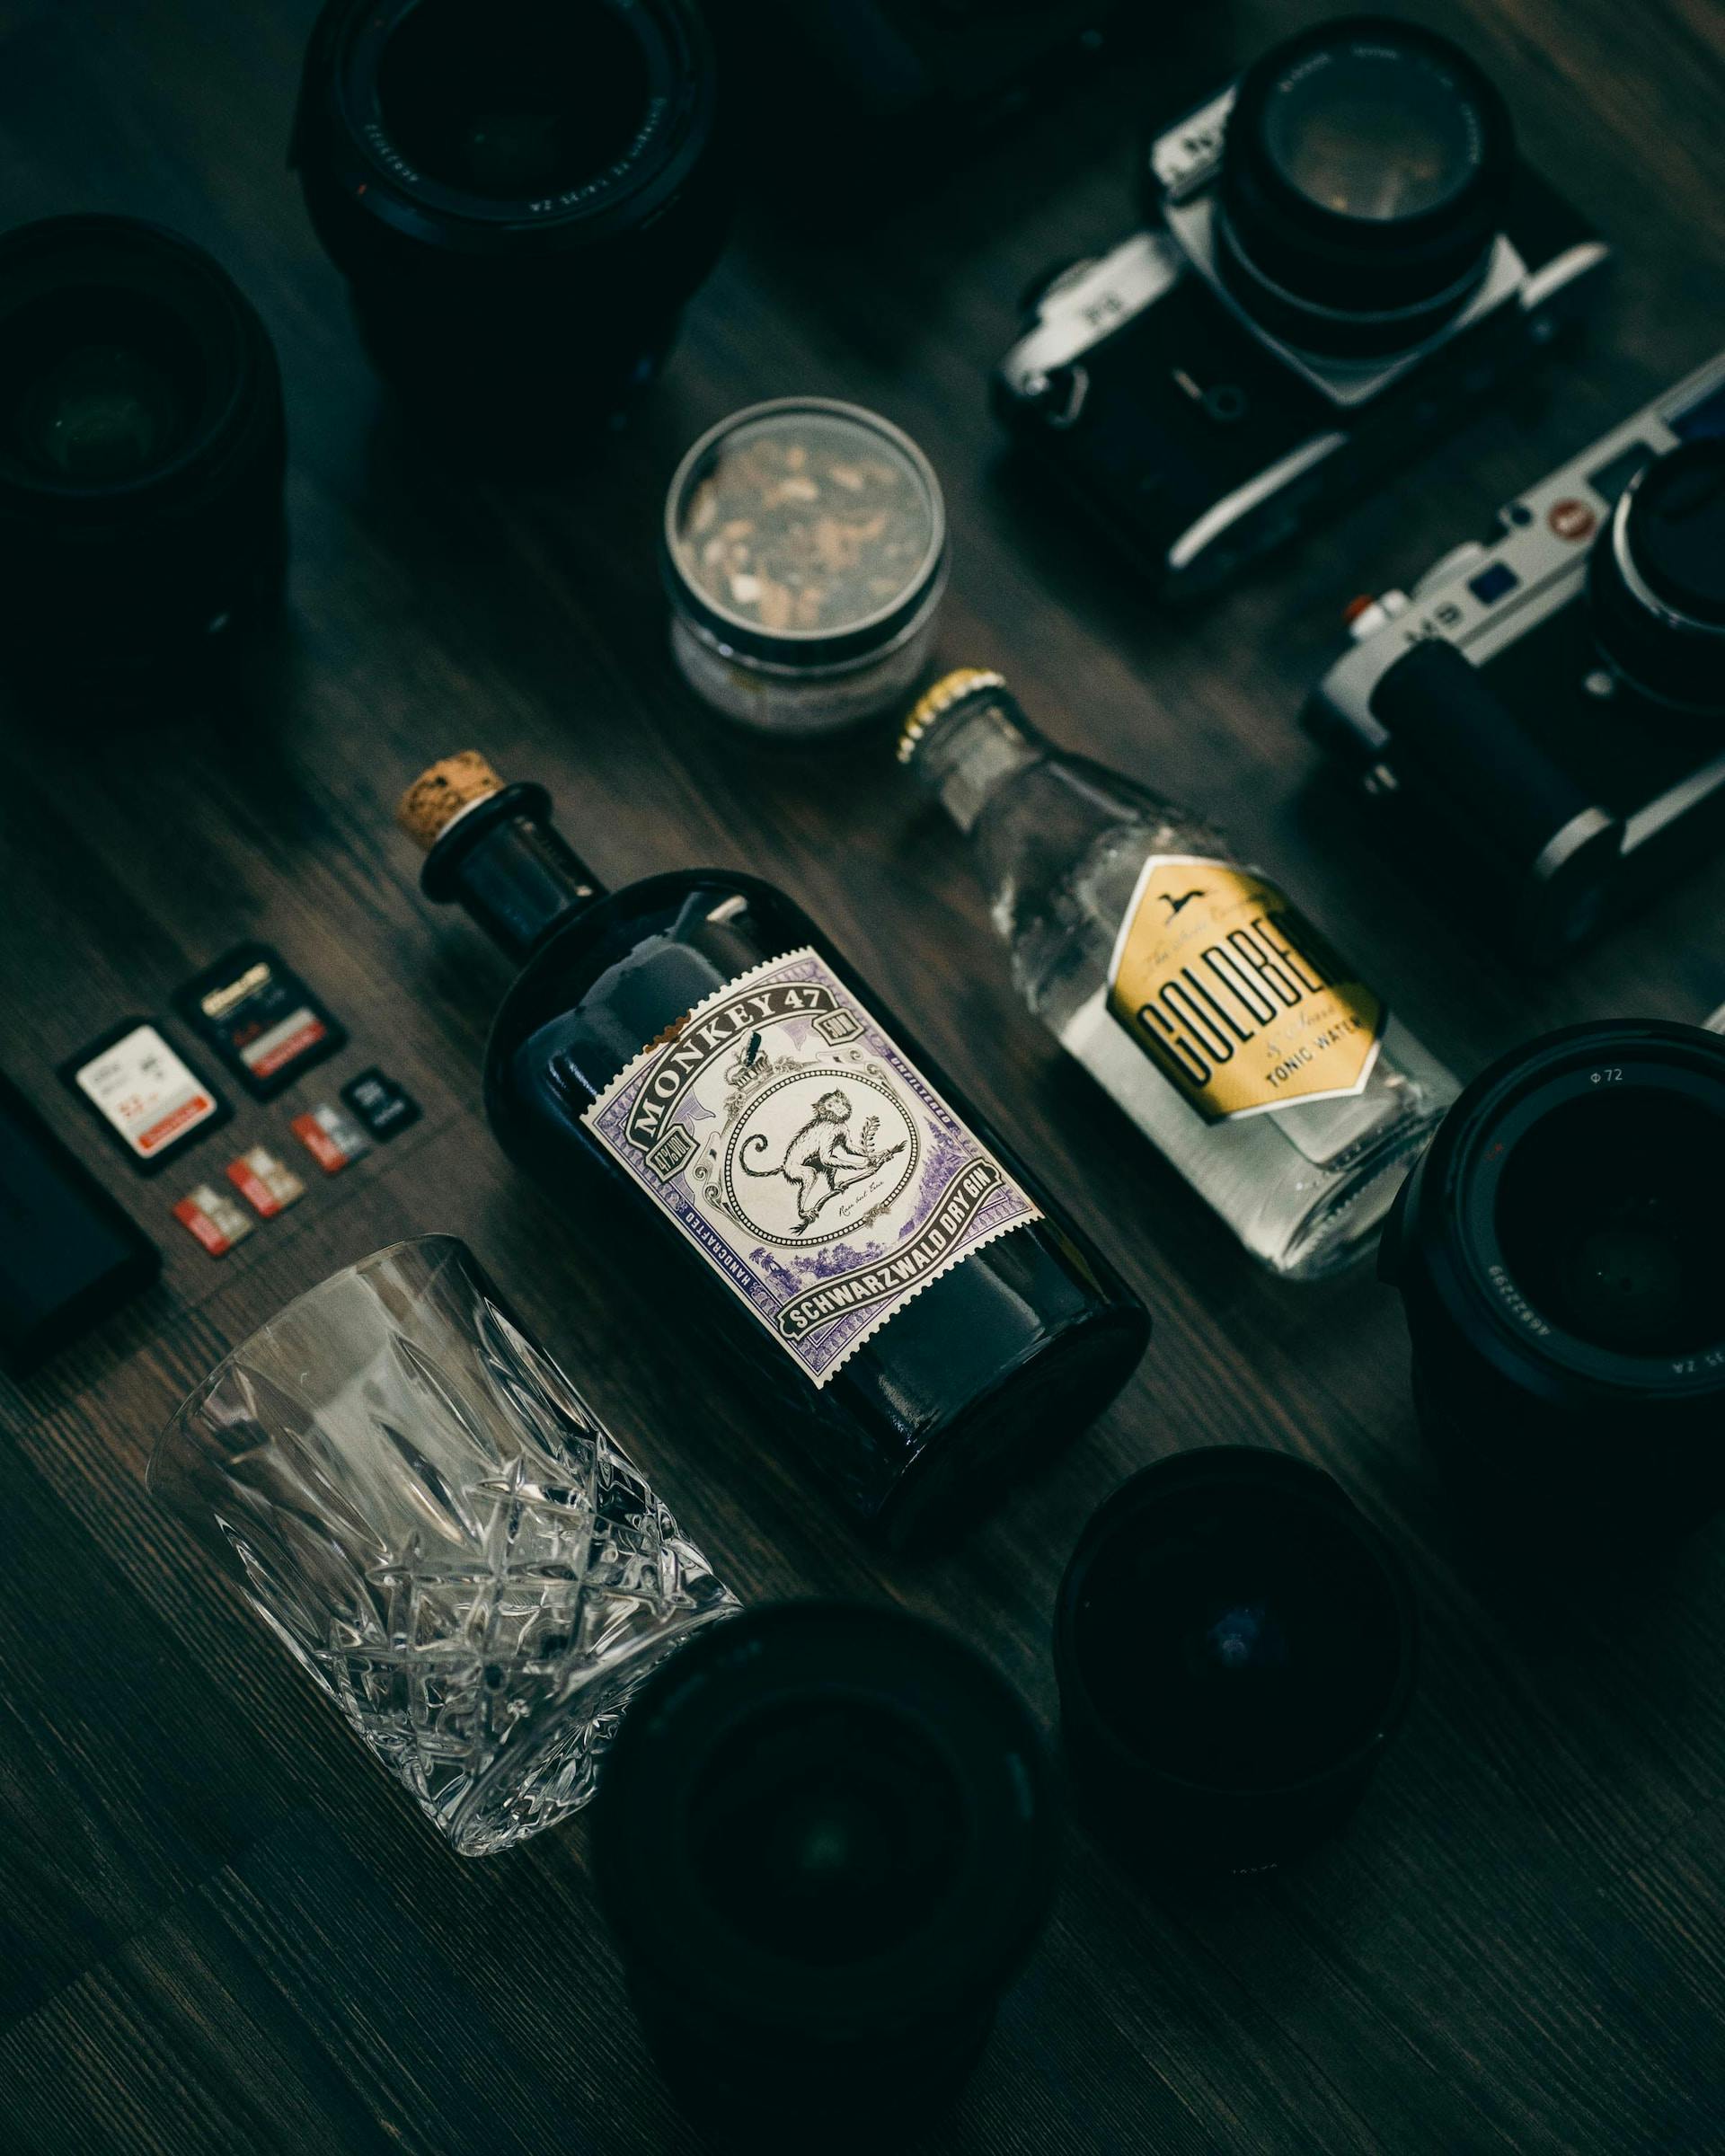 Auf dunklem Holzboden eine Flasche Gin, Tonic Water und ein Glas neben Kameras